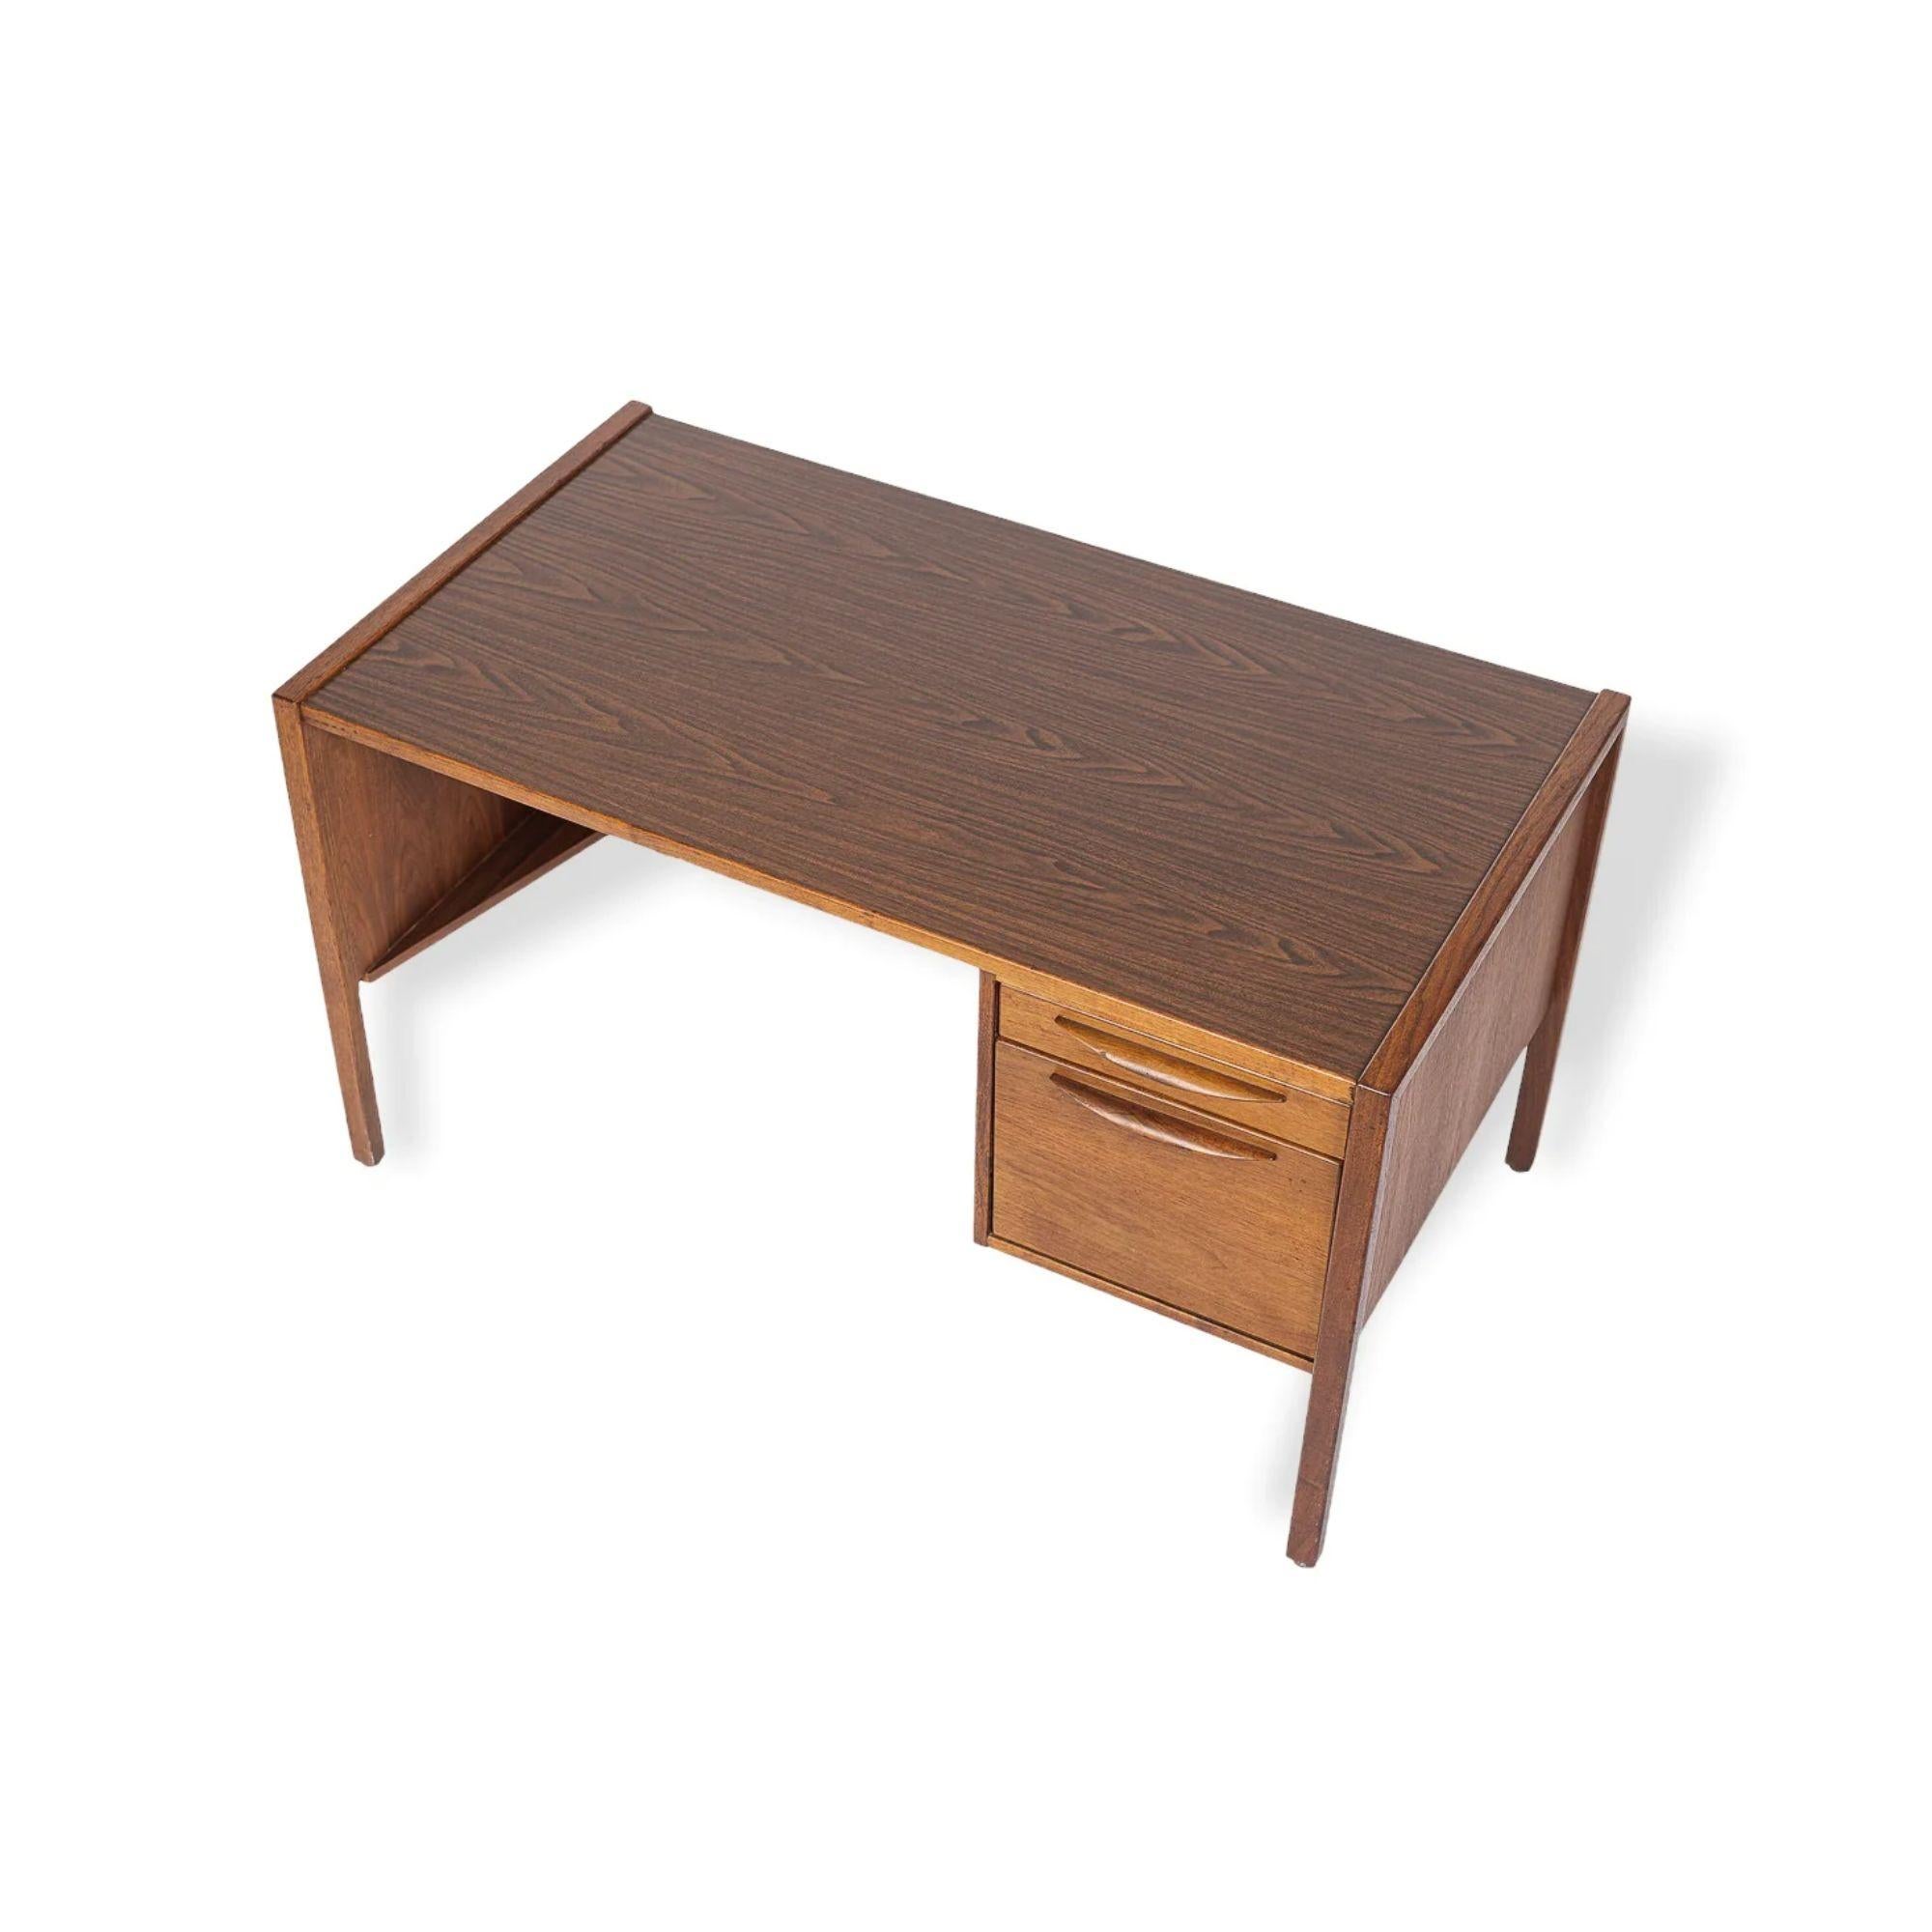 Dieser Mid-Century Modern-Schreibtisch von Jens Risom aus der Zeit um 1960 hat ein klassisch dänisches, modernes Design mit klaren, minimalistischen, geometrischen Linien. Der Schreibtisch ist solide, schwer und gut verarbeitet und besteht aus einem